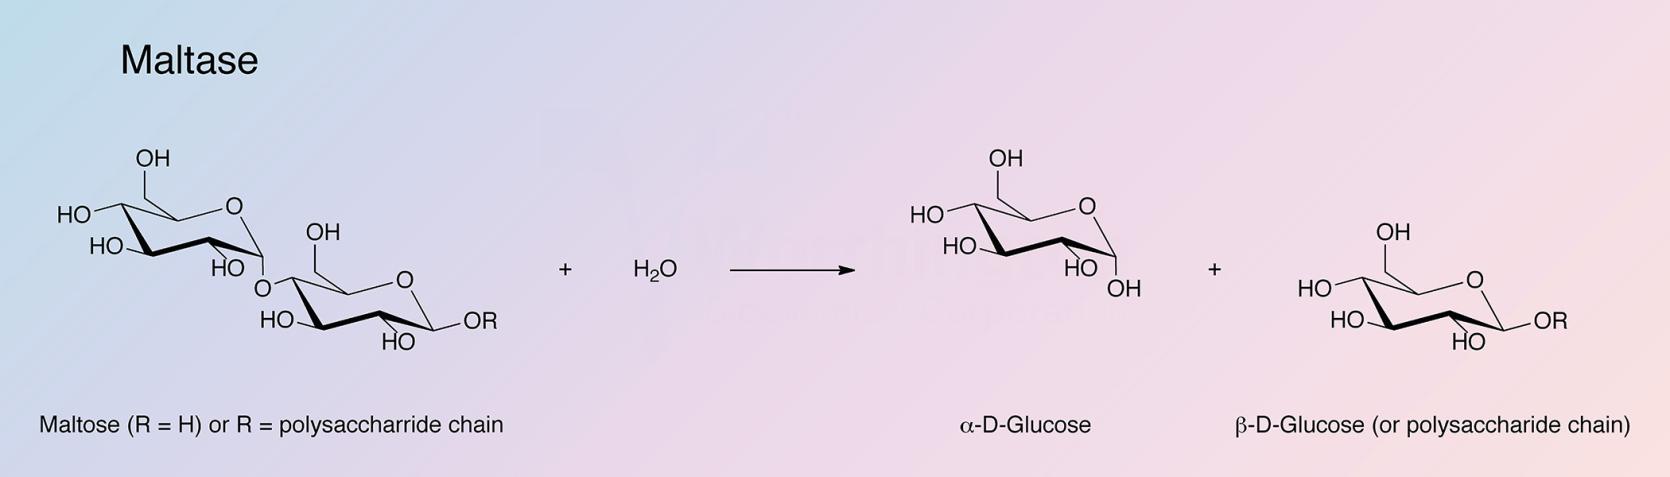 Maltase Enzymatic Reaction